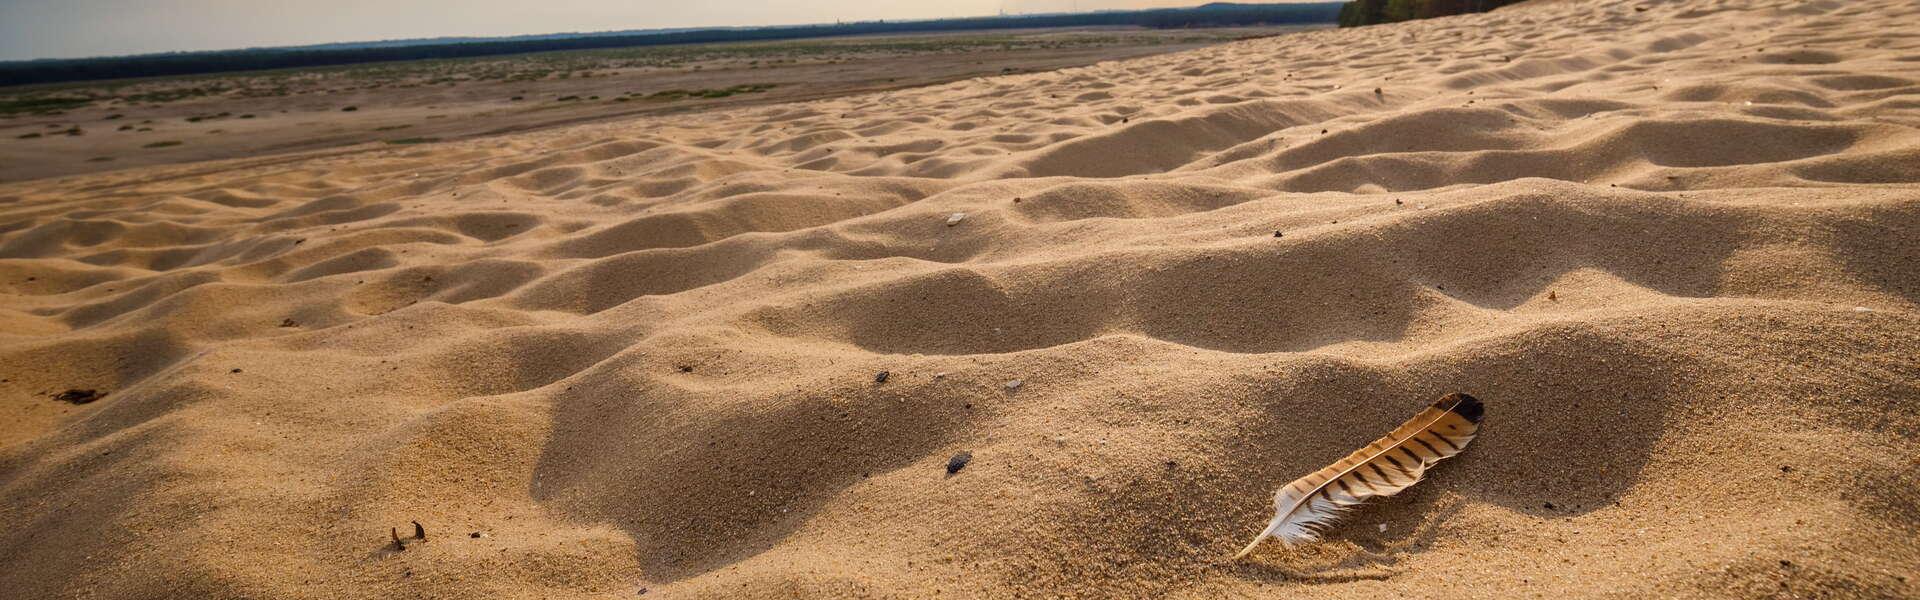 Pustynia Błędowska. Lotne piaski, z prawej strony niewielka kępa zieleni